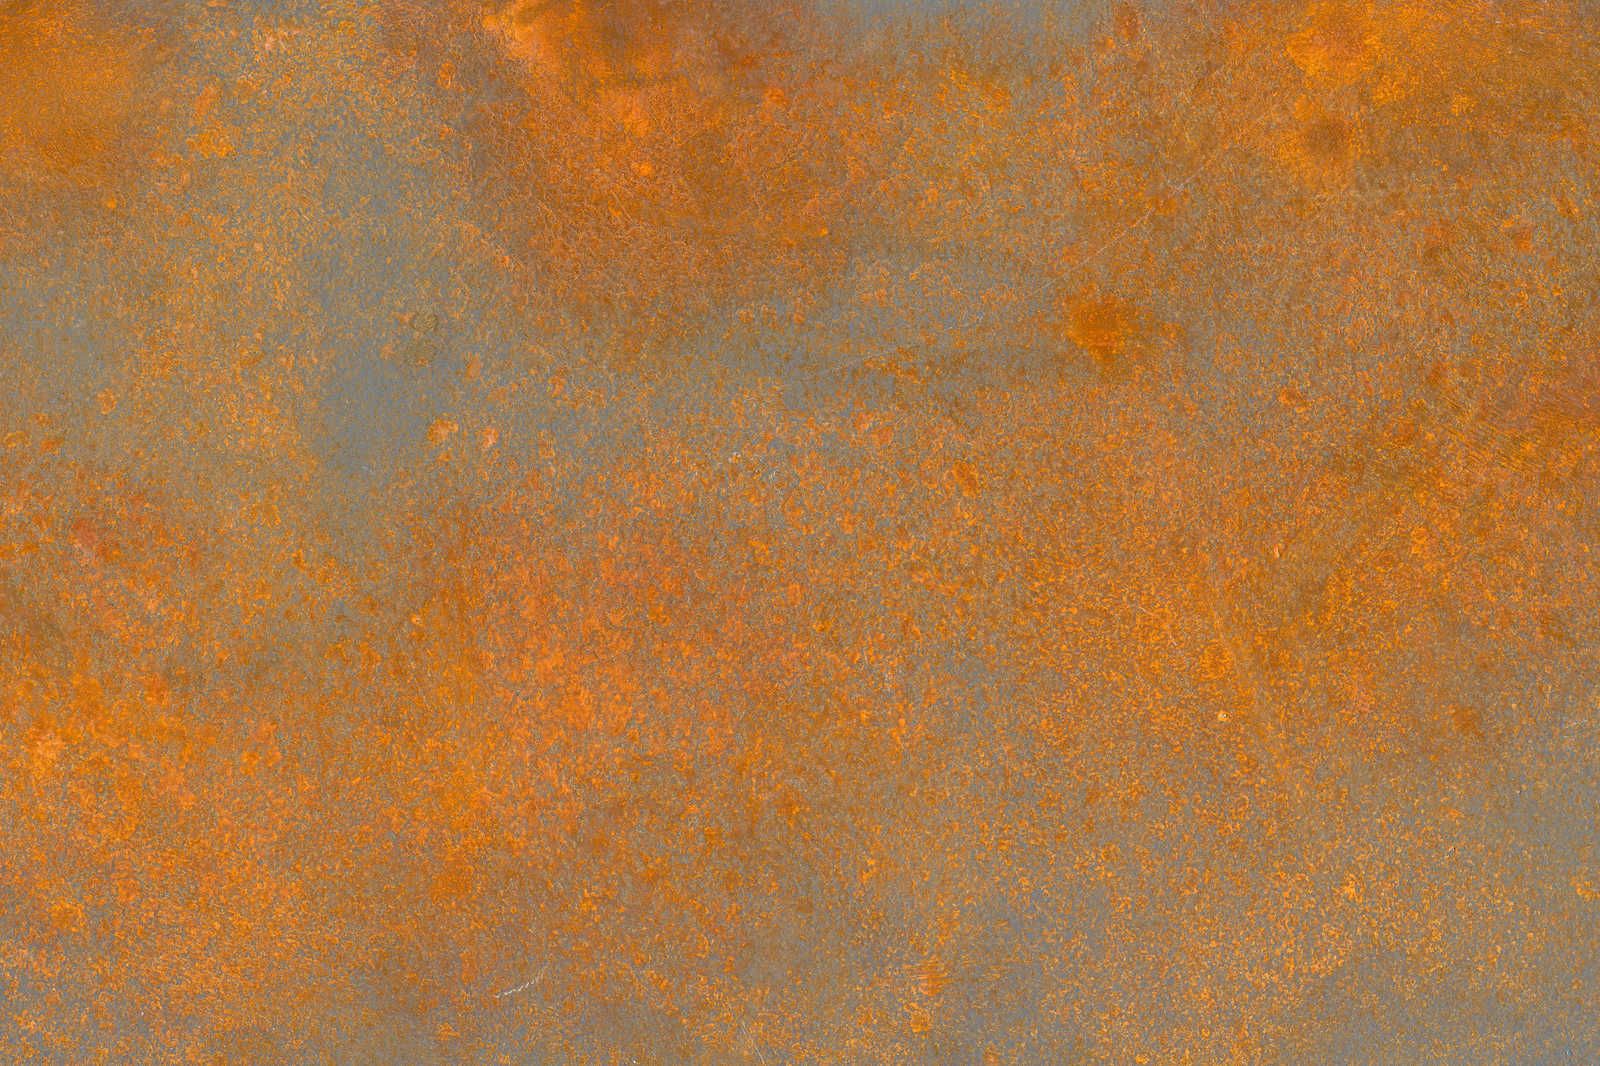             Toile aspect rouille orange marron avec look usé - 0,90 m x 0,60 m
        